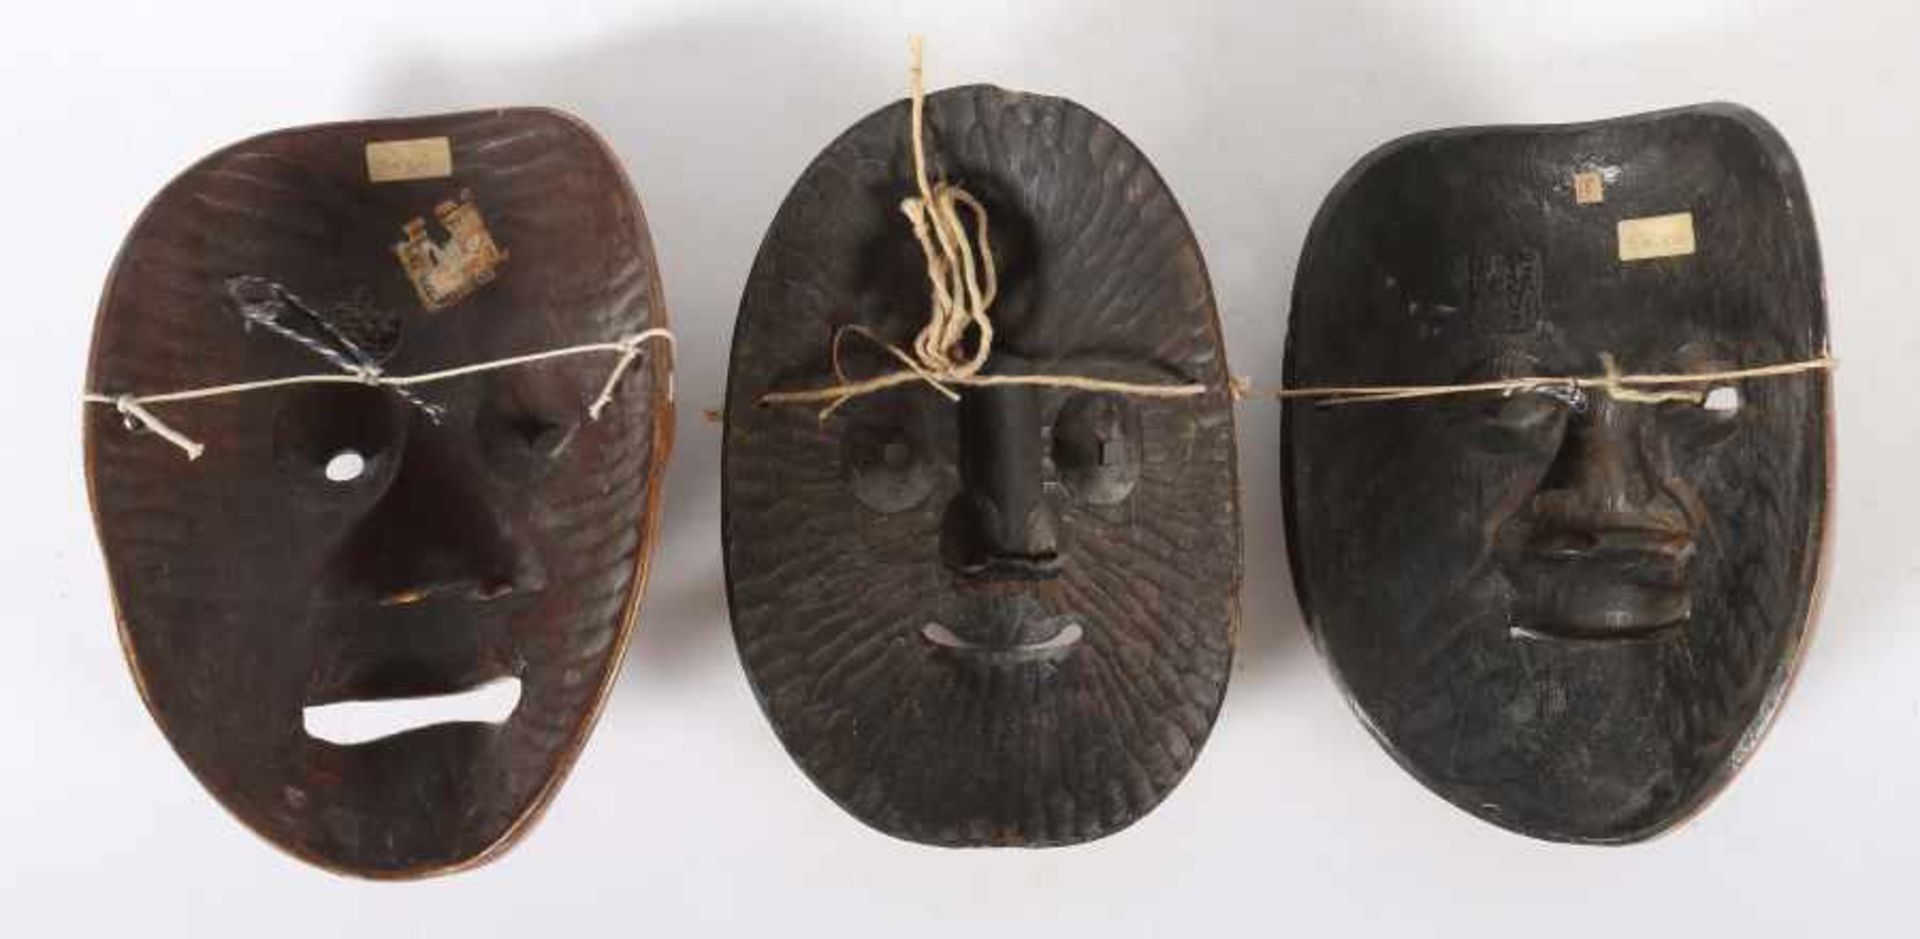 3 Nô-MaskenJapan, 19./20. Jh., Holz/gefasst, 3 Masken des Nô-Theaters, Darstellung von Charakteren, - Bild 2 aus 2